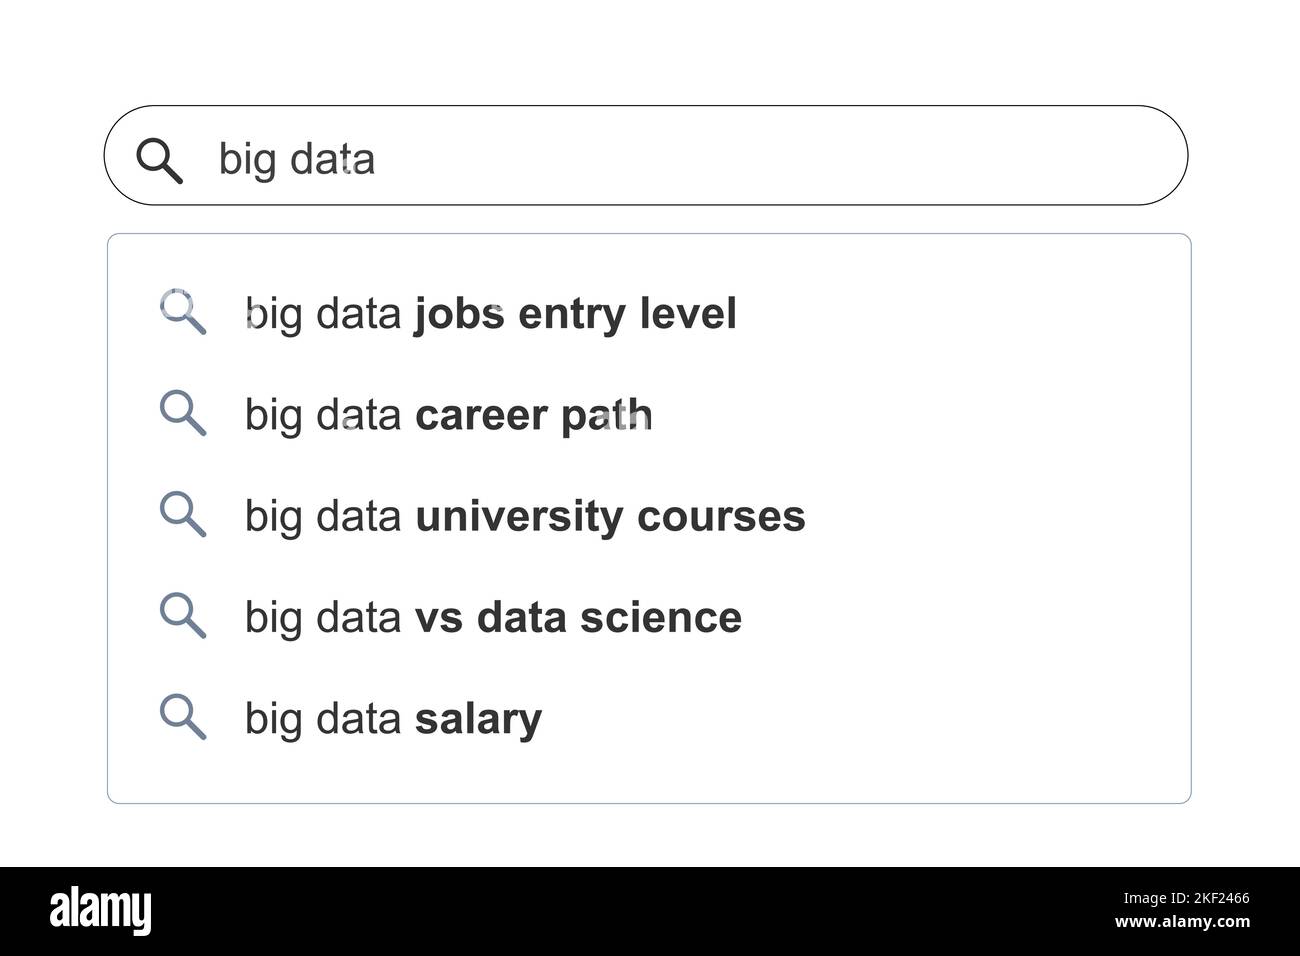 Suchergebnisse zu Big-Data-Themen. Big Data Bildung und Jobs Konzept Online-Suchmaschine Autocomplete Vorschläge. Stock Vektor